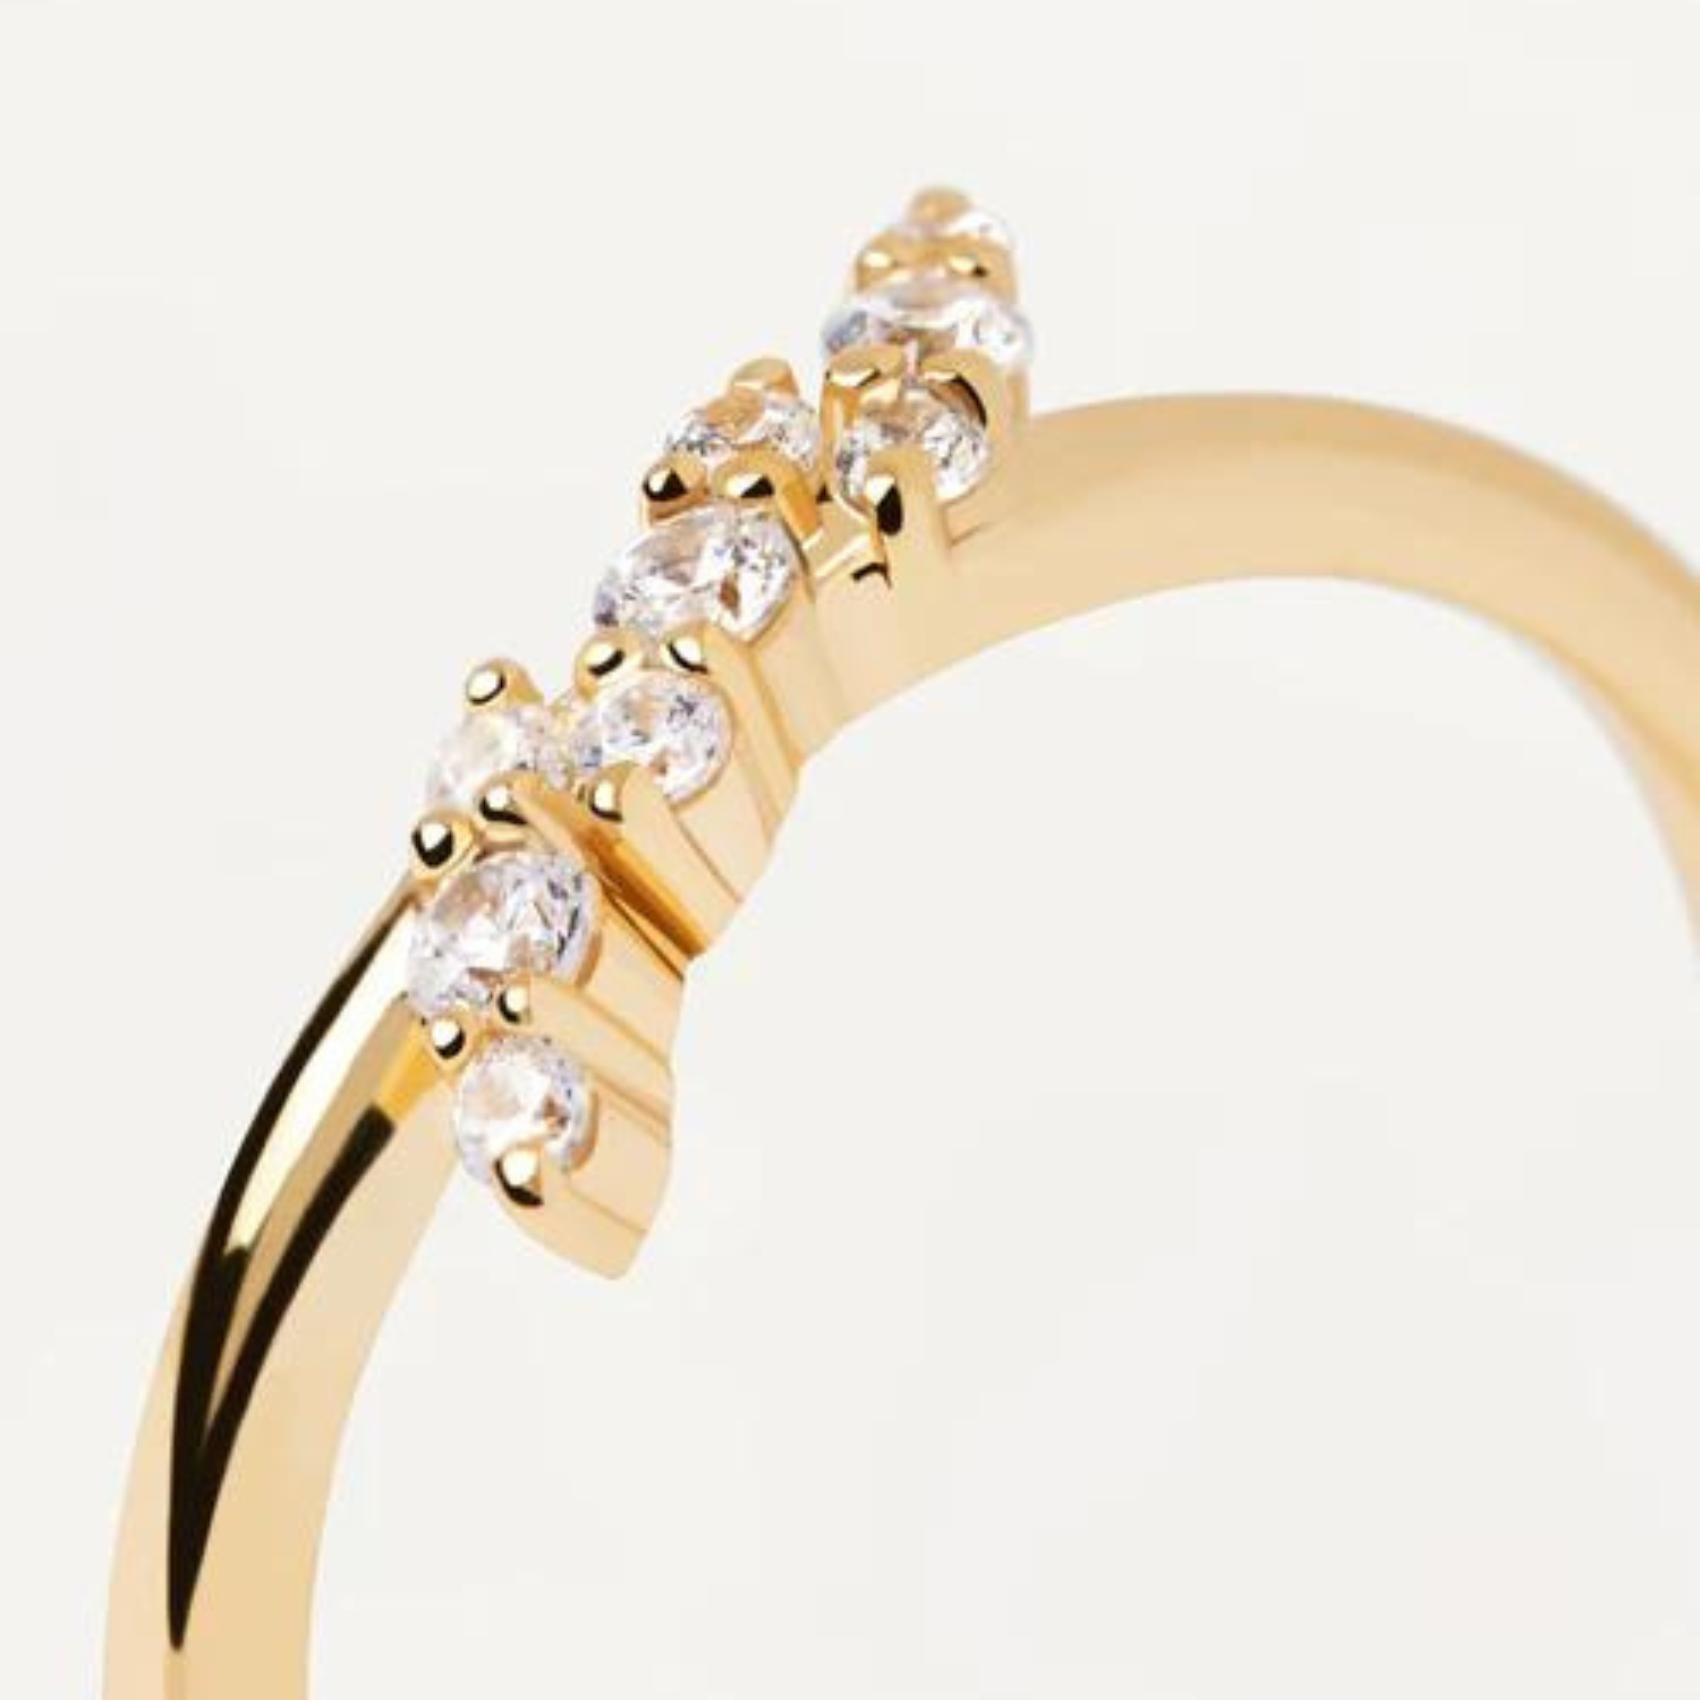 Γυναικείο δαχτυλίδι PDPAOLA AN01-886 Natura Ring κατασκευασμένο από ασήμι 925 επιχρυσωμένο με επίστρωση κίτρινου χρυσού 18 καρατίων στολισμένο με λαμπερά ζιργκόν.